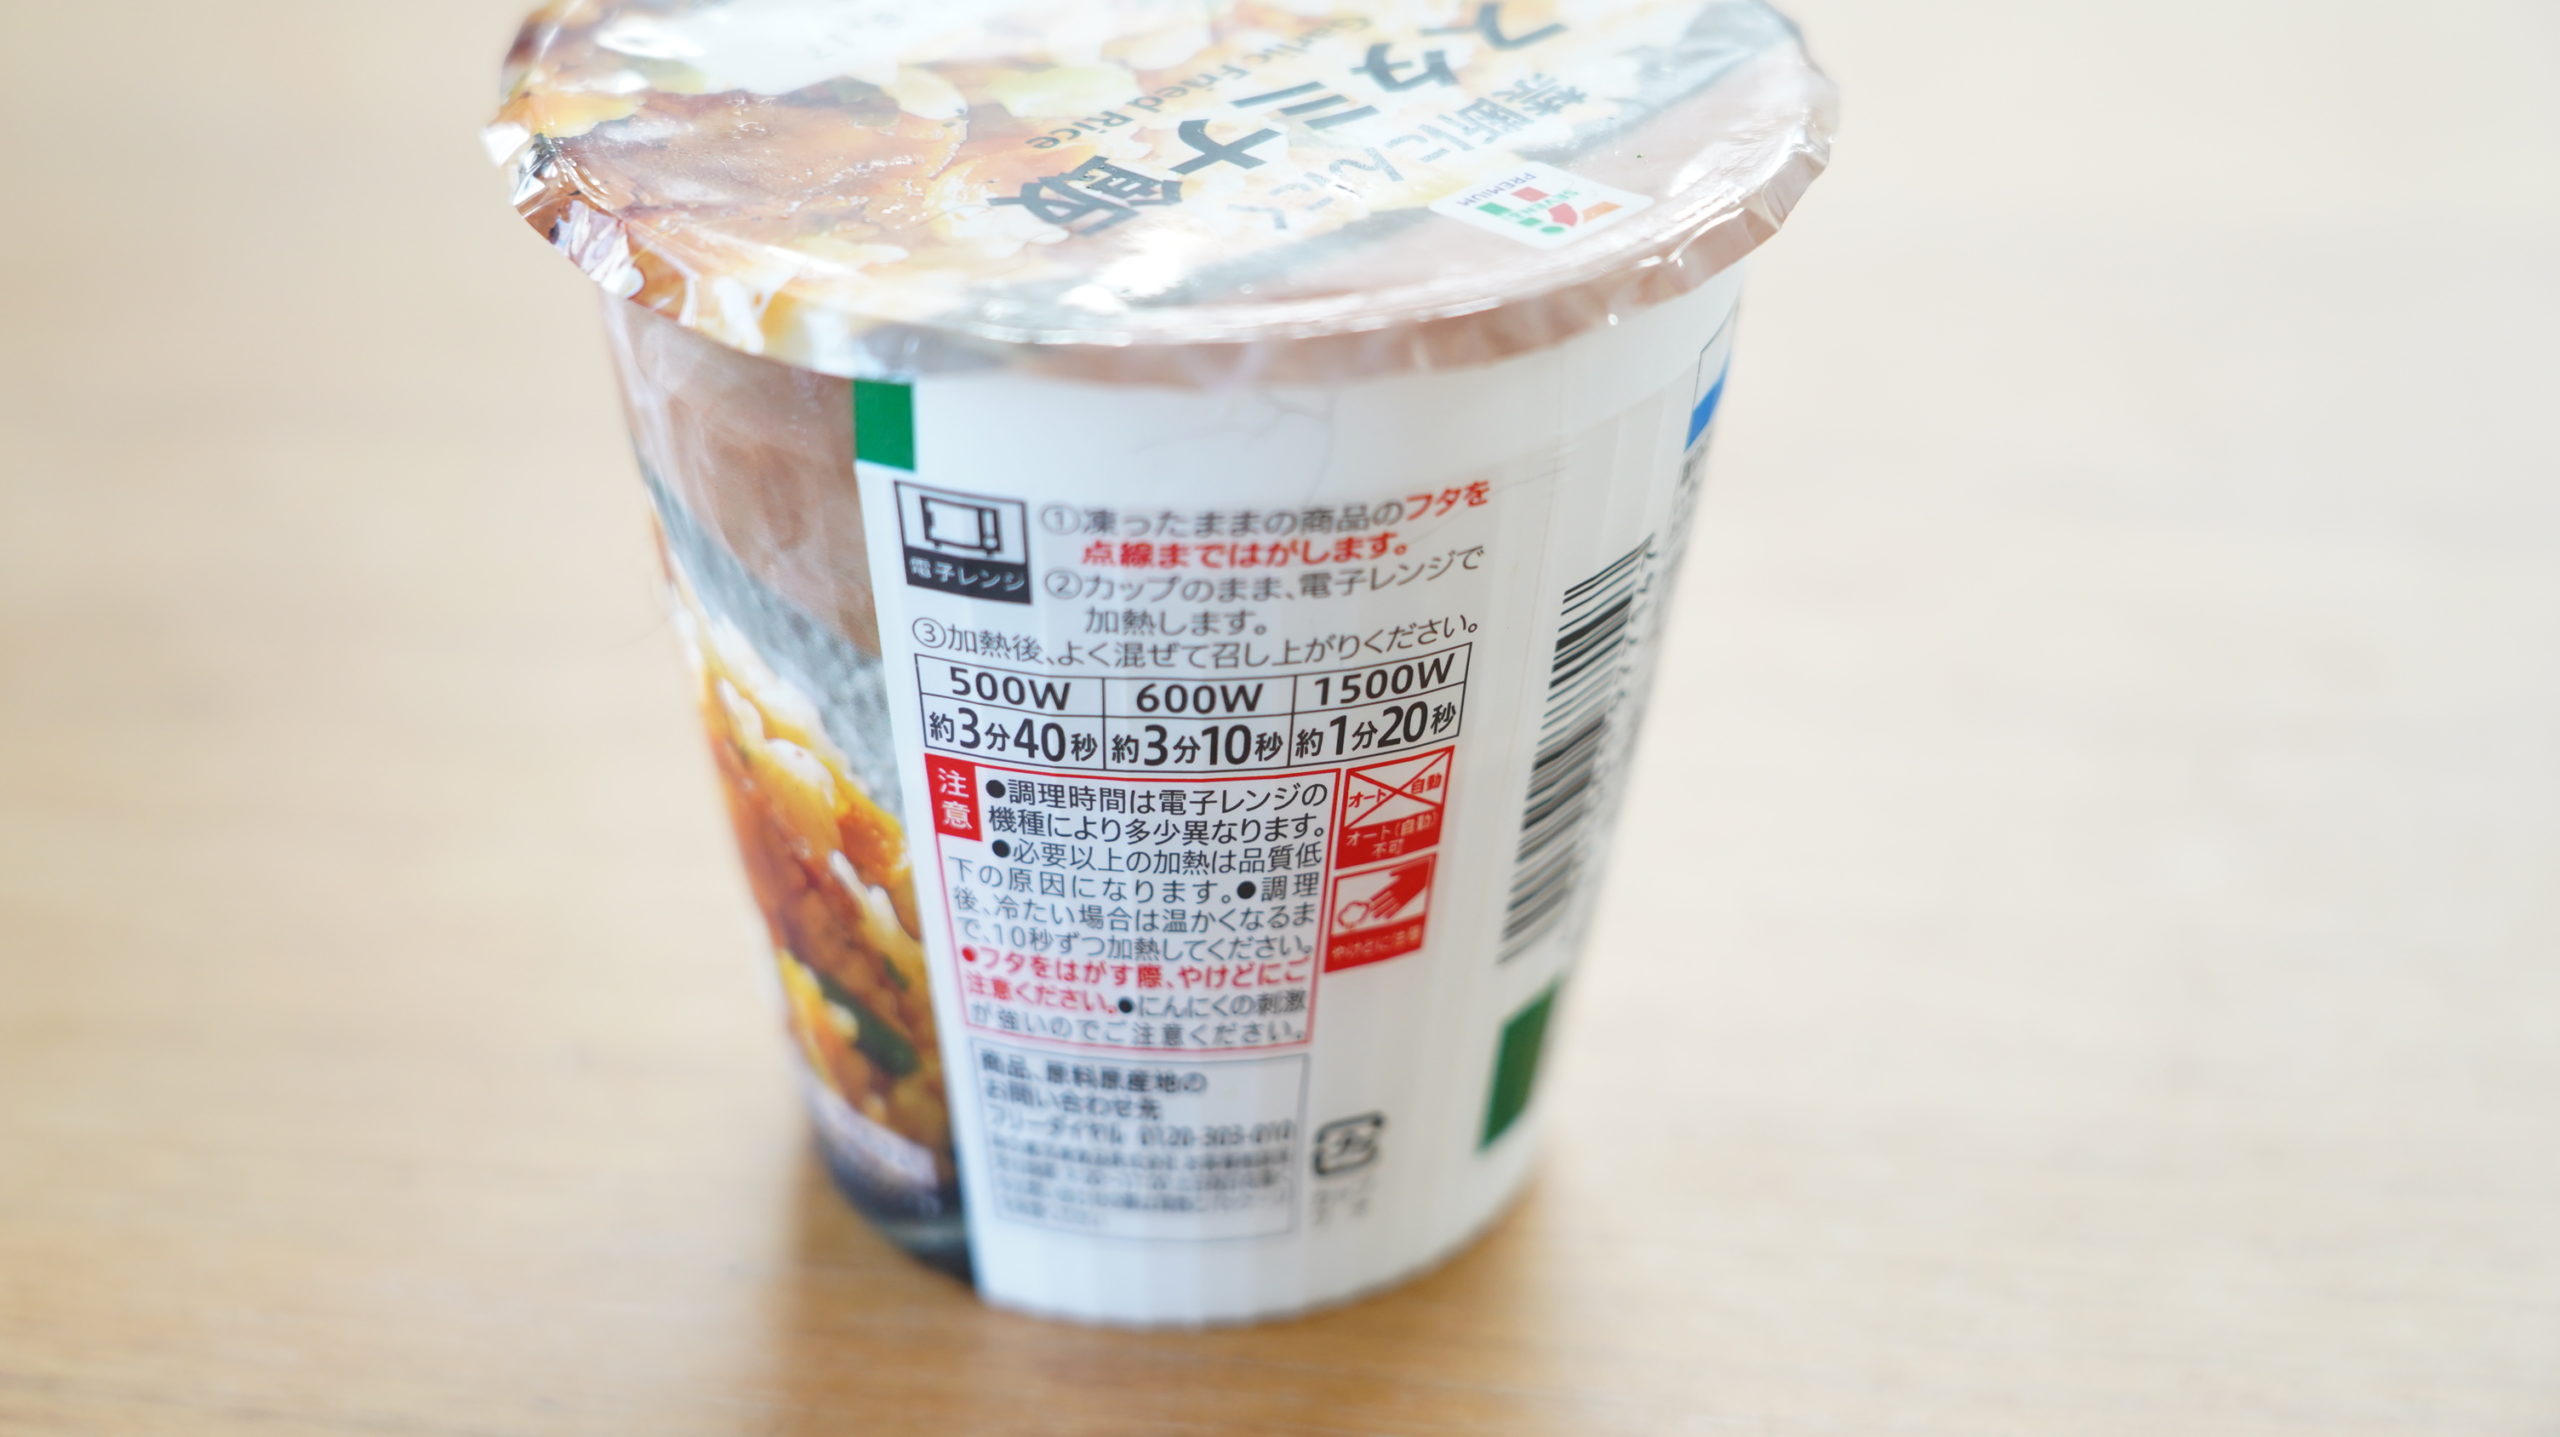 セブンイレブンの冷凍食品「禁断にんにくスタミナ飯」のパッケージに加熱時間が書かれている写真